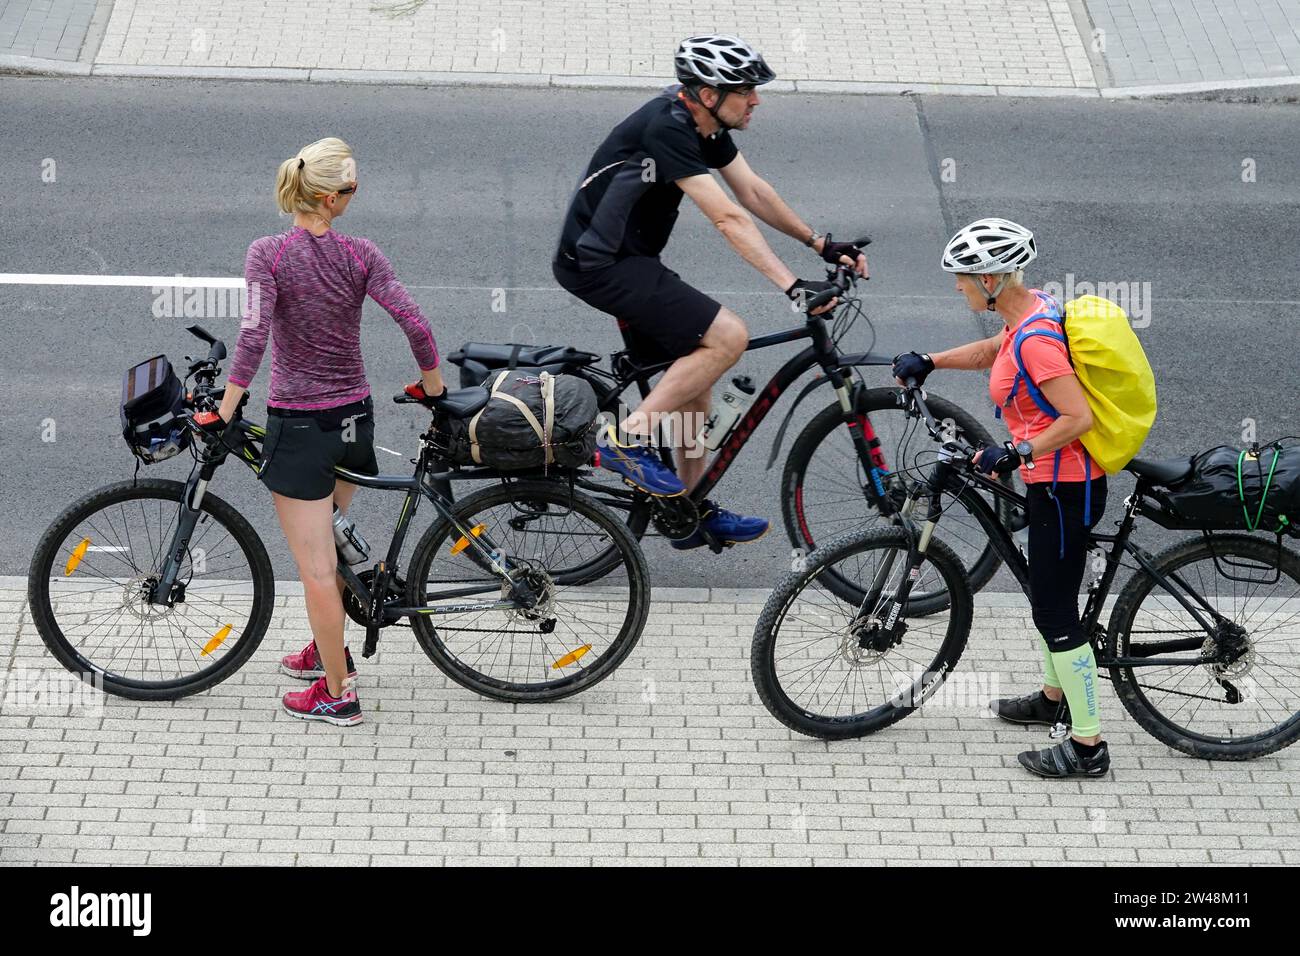 Zwei Frauen auf Fahrrädern treffen einen vorbeifahrenden Mann auf einem Fahrrad Stockfoto